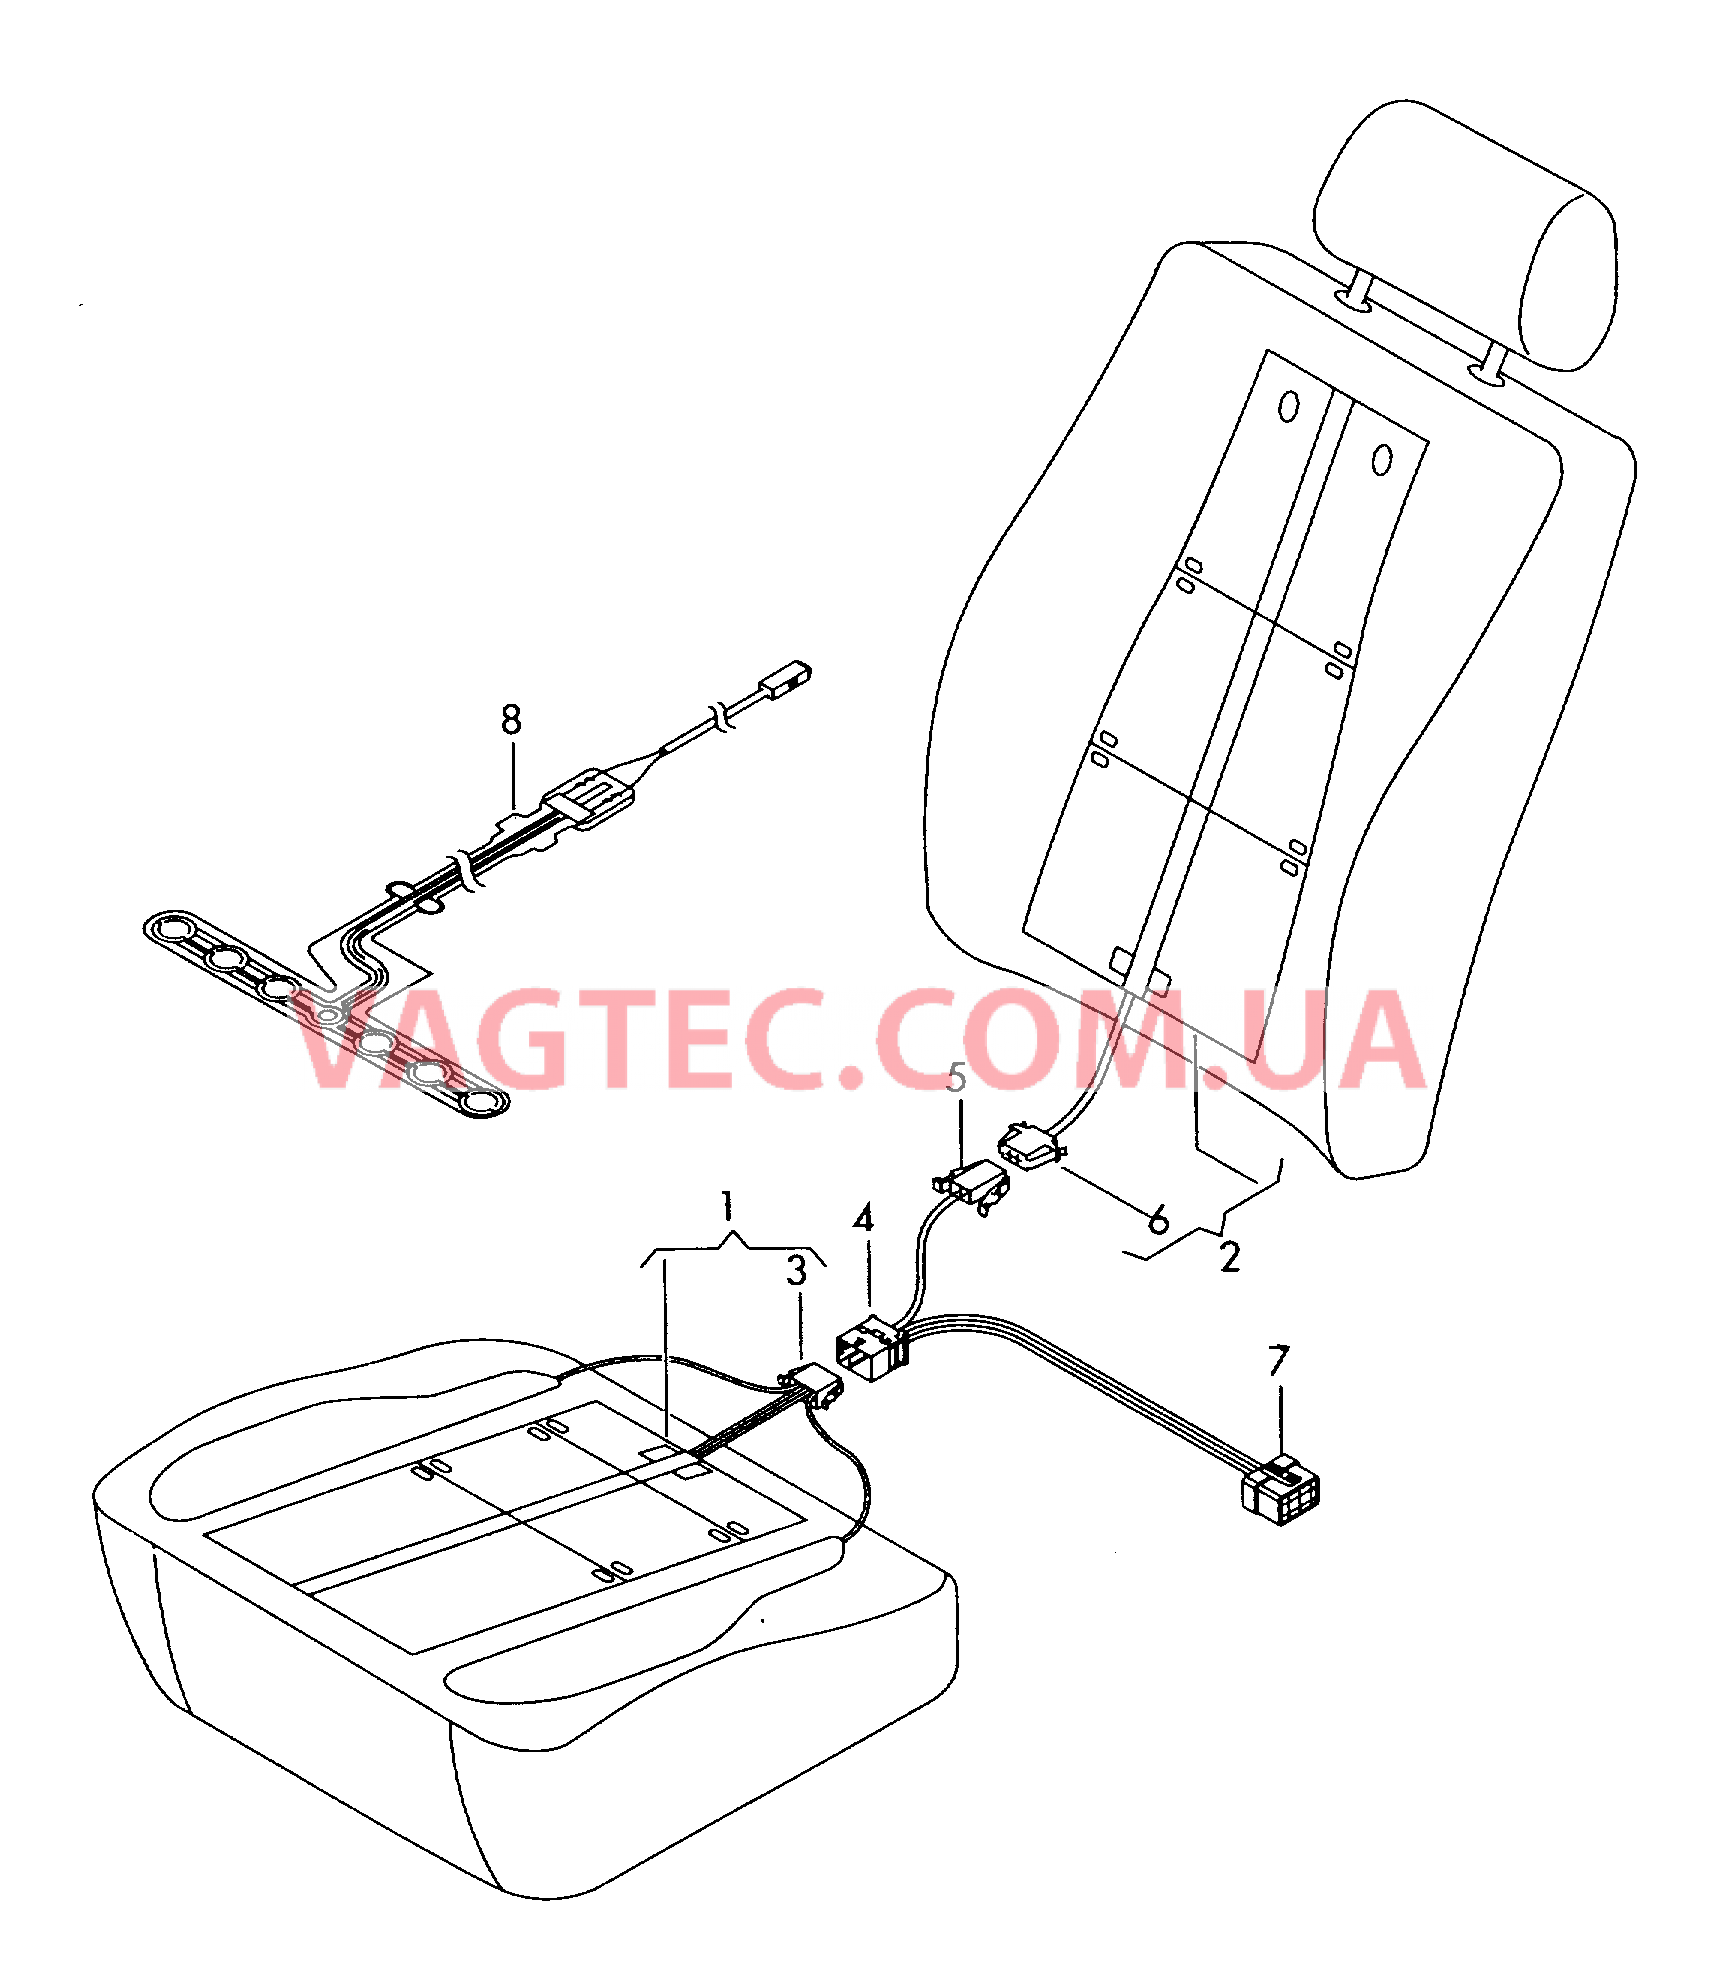 Нагревательный элемент спинки и подушки сиденья  Вставка распознавания занятости сиденья  для а/м с 2 поперечными швами на поверхности сиденья F             >> 8Р-7-223 450* для AUDI A3 2005